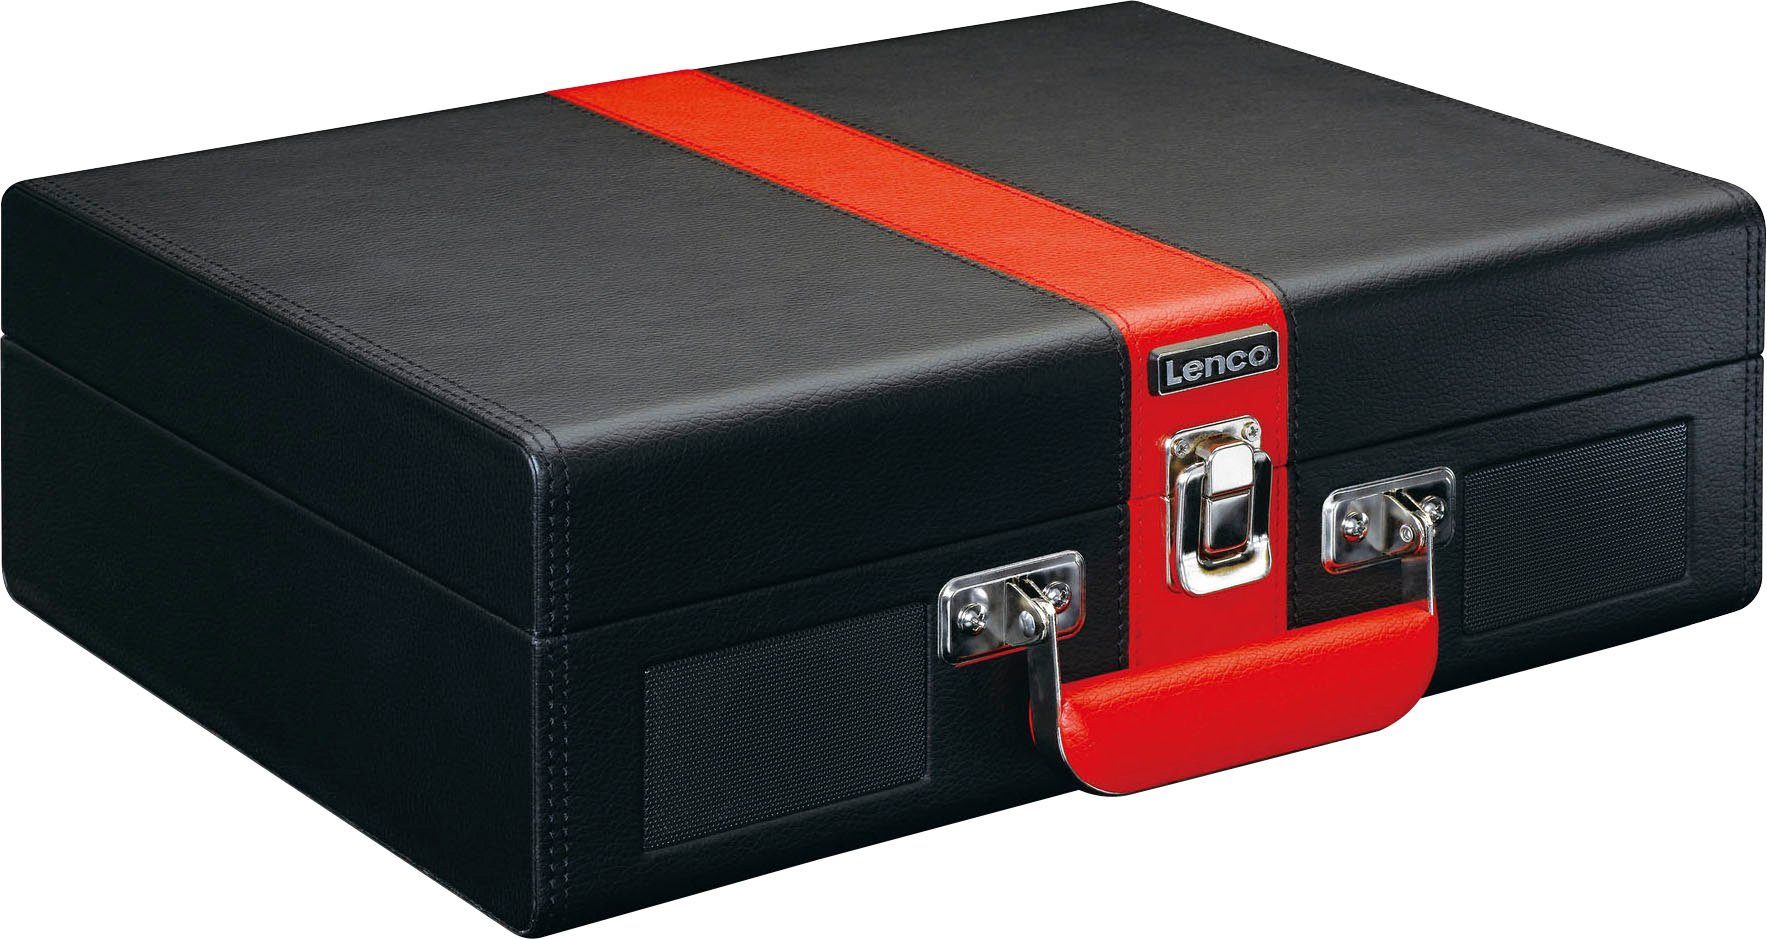 Plattenspieler BT und eingebauten mit Lenco Koffer Plattenspieler Rot-Schwarz (Riemenantrieb) Lsp.